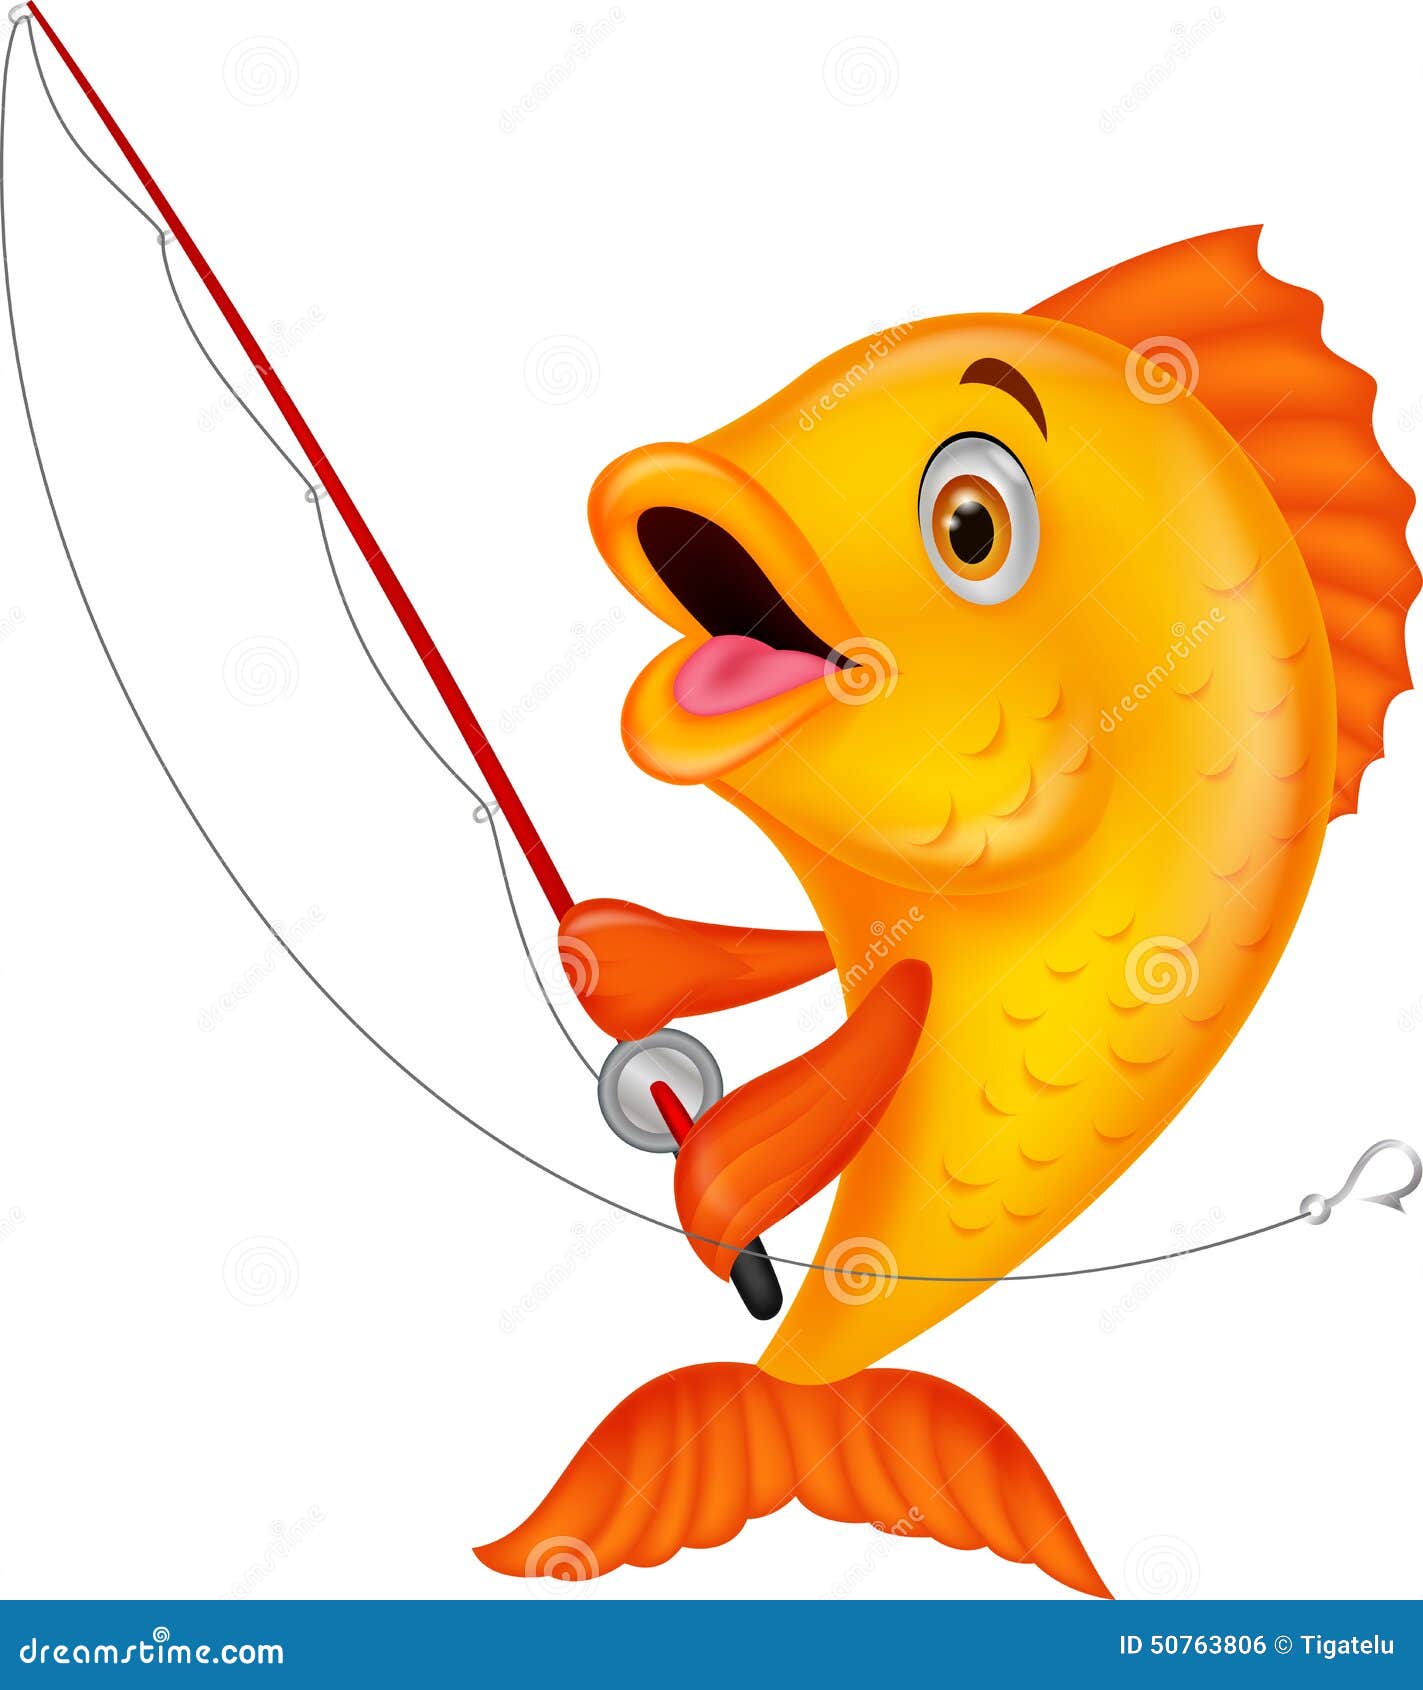 Fish Holding Fishing Rod Stock Illustrations – 1,102 Fish Holding